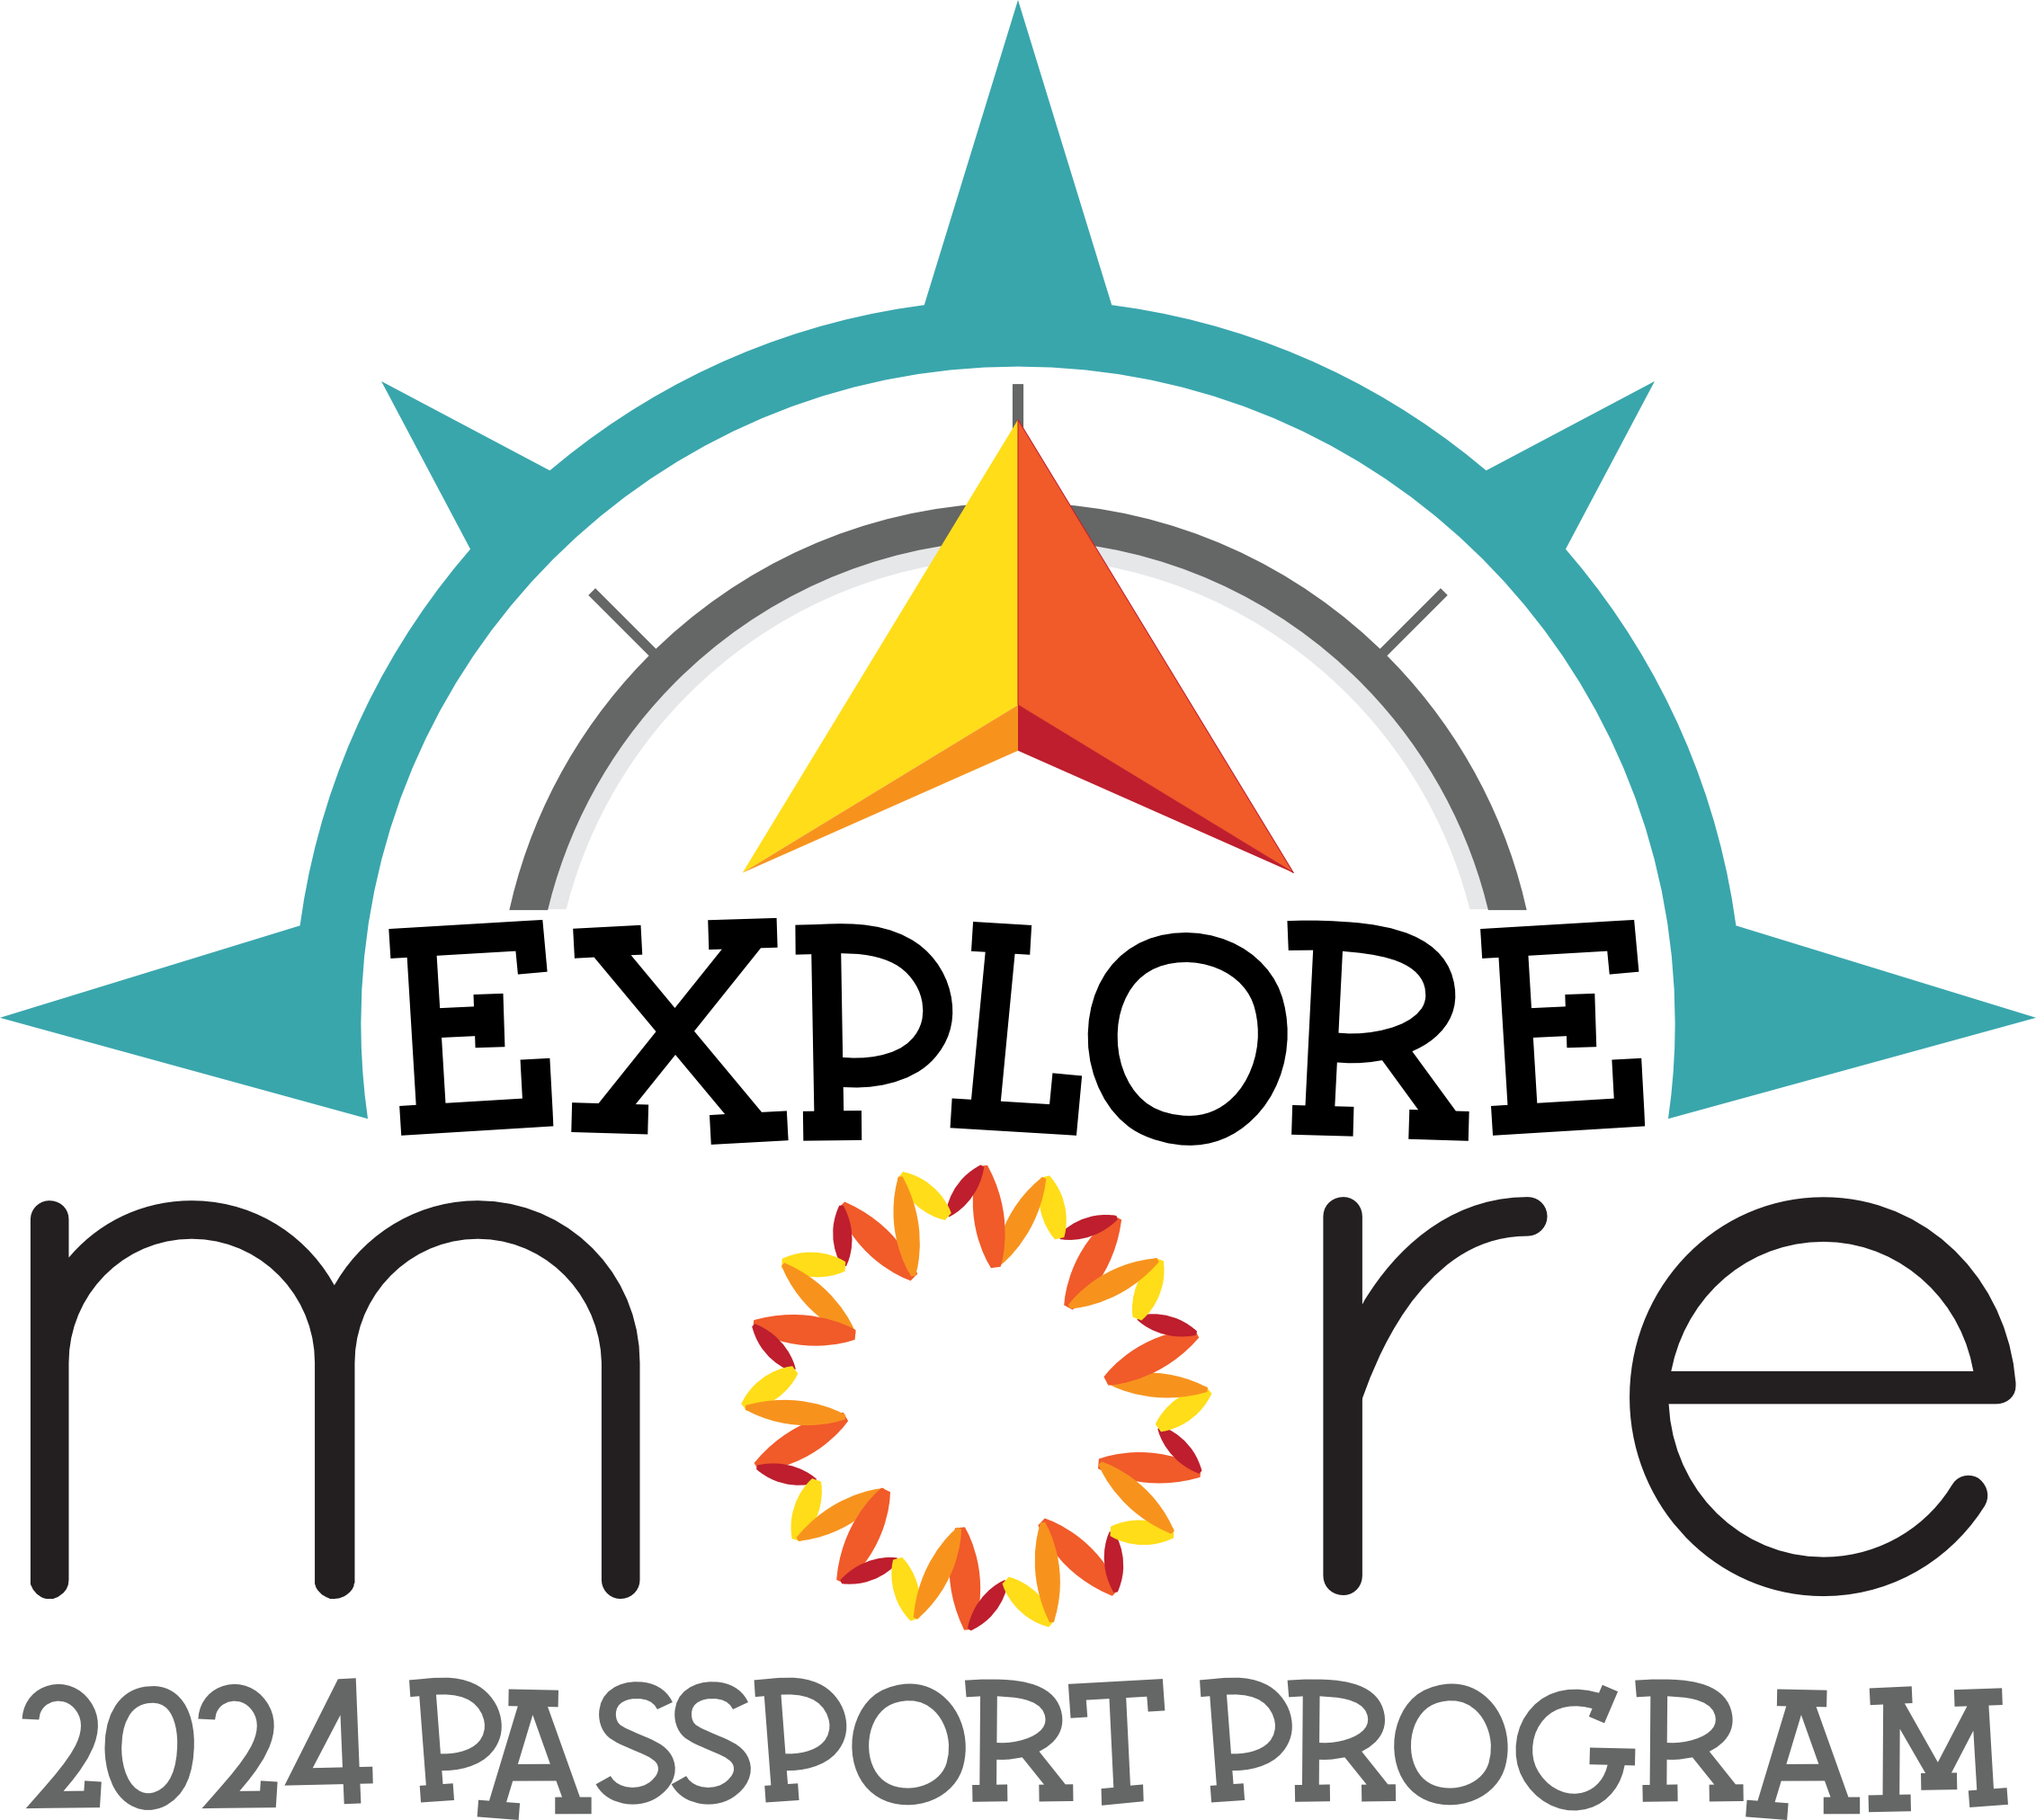 Explore MORE 2024 Passport Program, compass and arrow